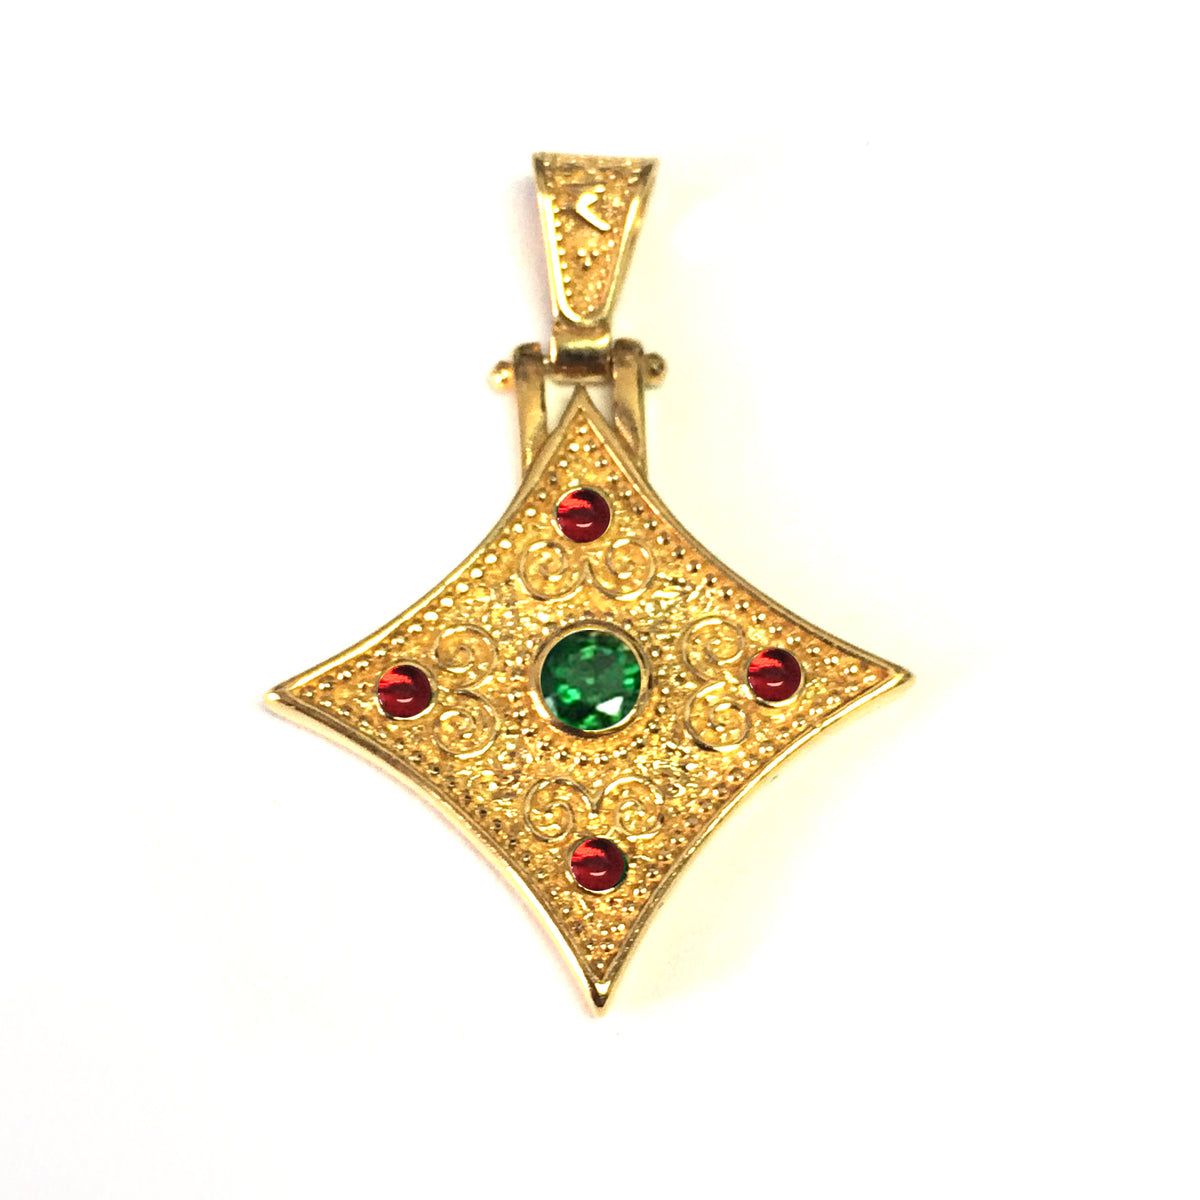 Sterling Silver 18 karat guld överlägg bysantinskt Rhombus hänge fina designersmycken för män och kvinnor